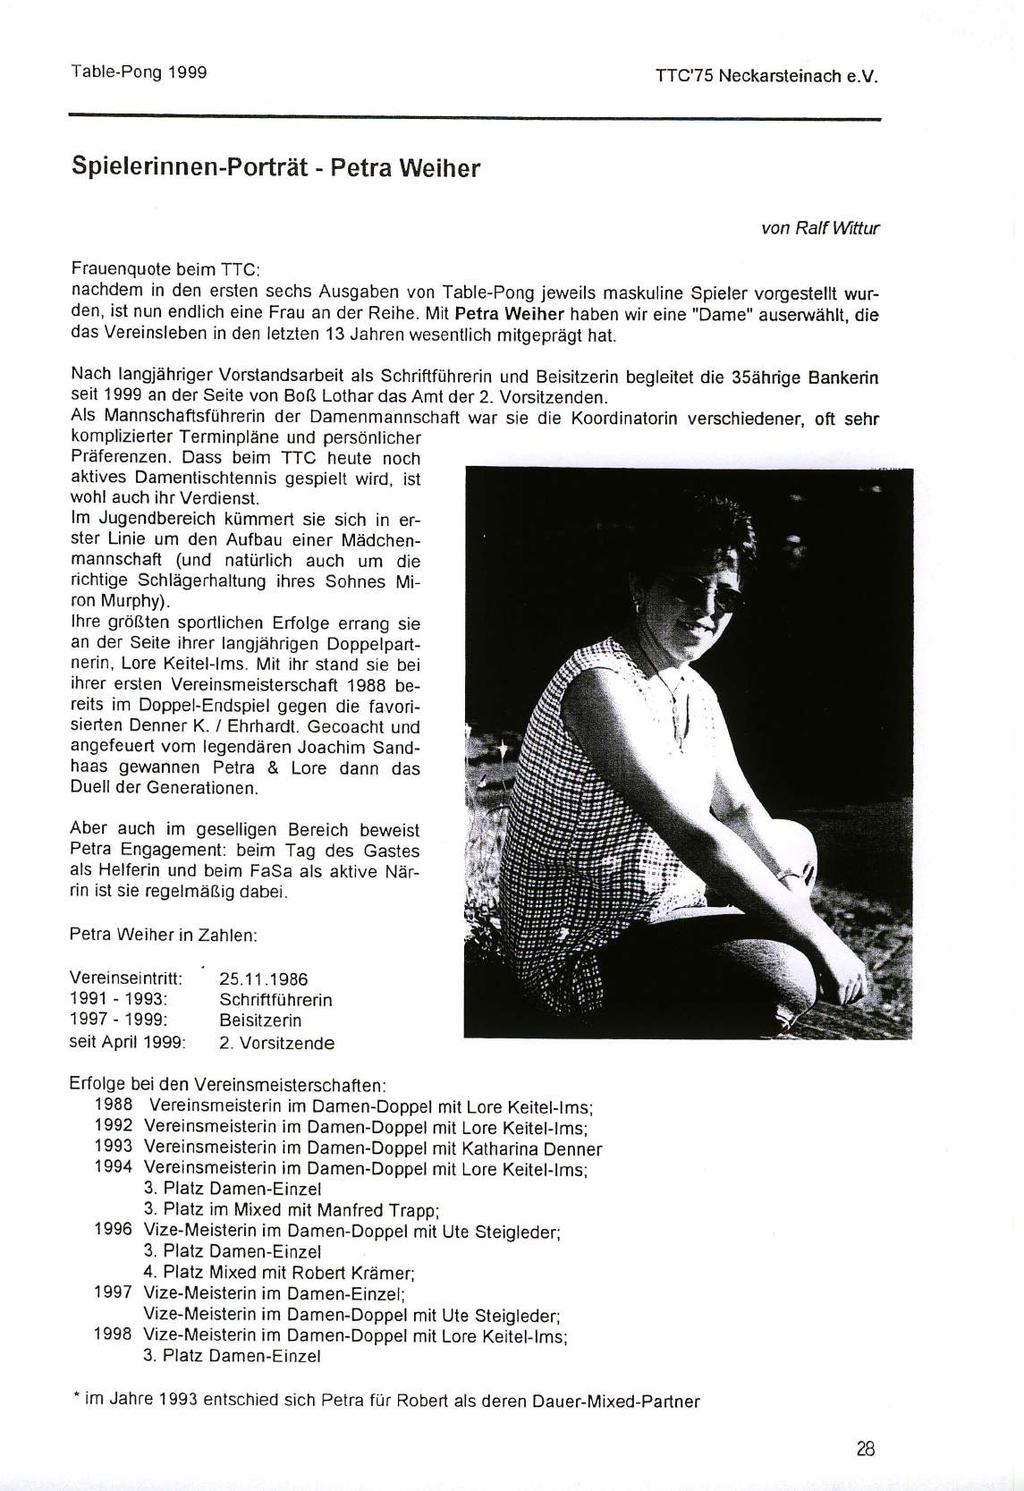 Spielerinnen-Porträt - Petra Weiher von Ralf Wftur Frauenquote beim TTC: nachdem in den ersten sechs Ausgaben von Table-Pong jeweils maskuline Spieler vorgesteltt wurden, ist nun endlich eine Frau an